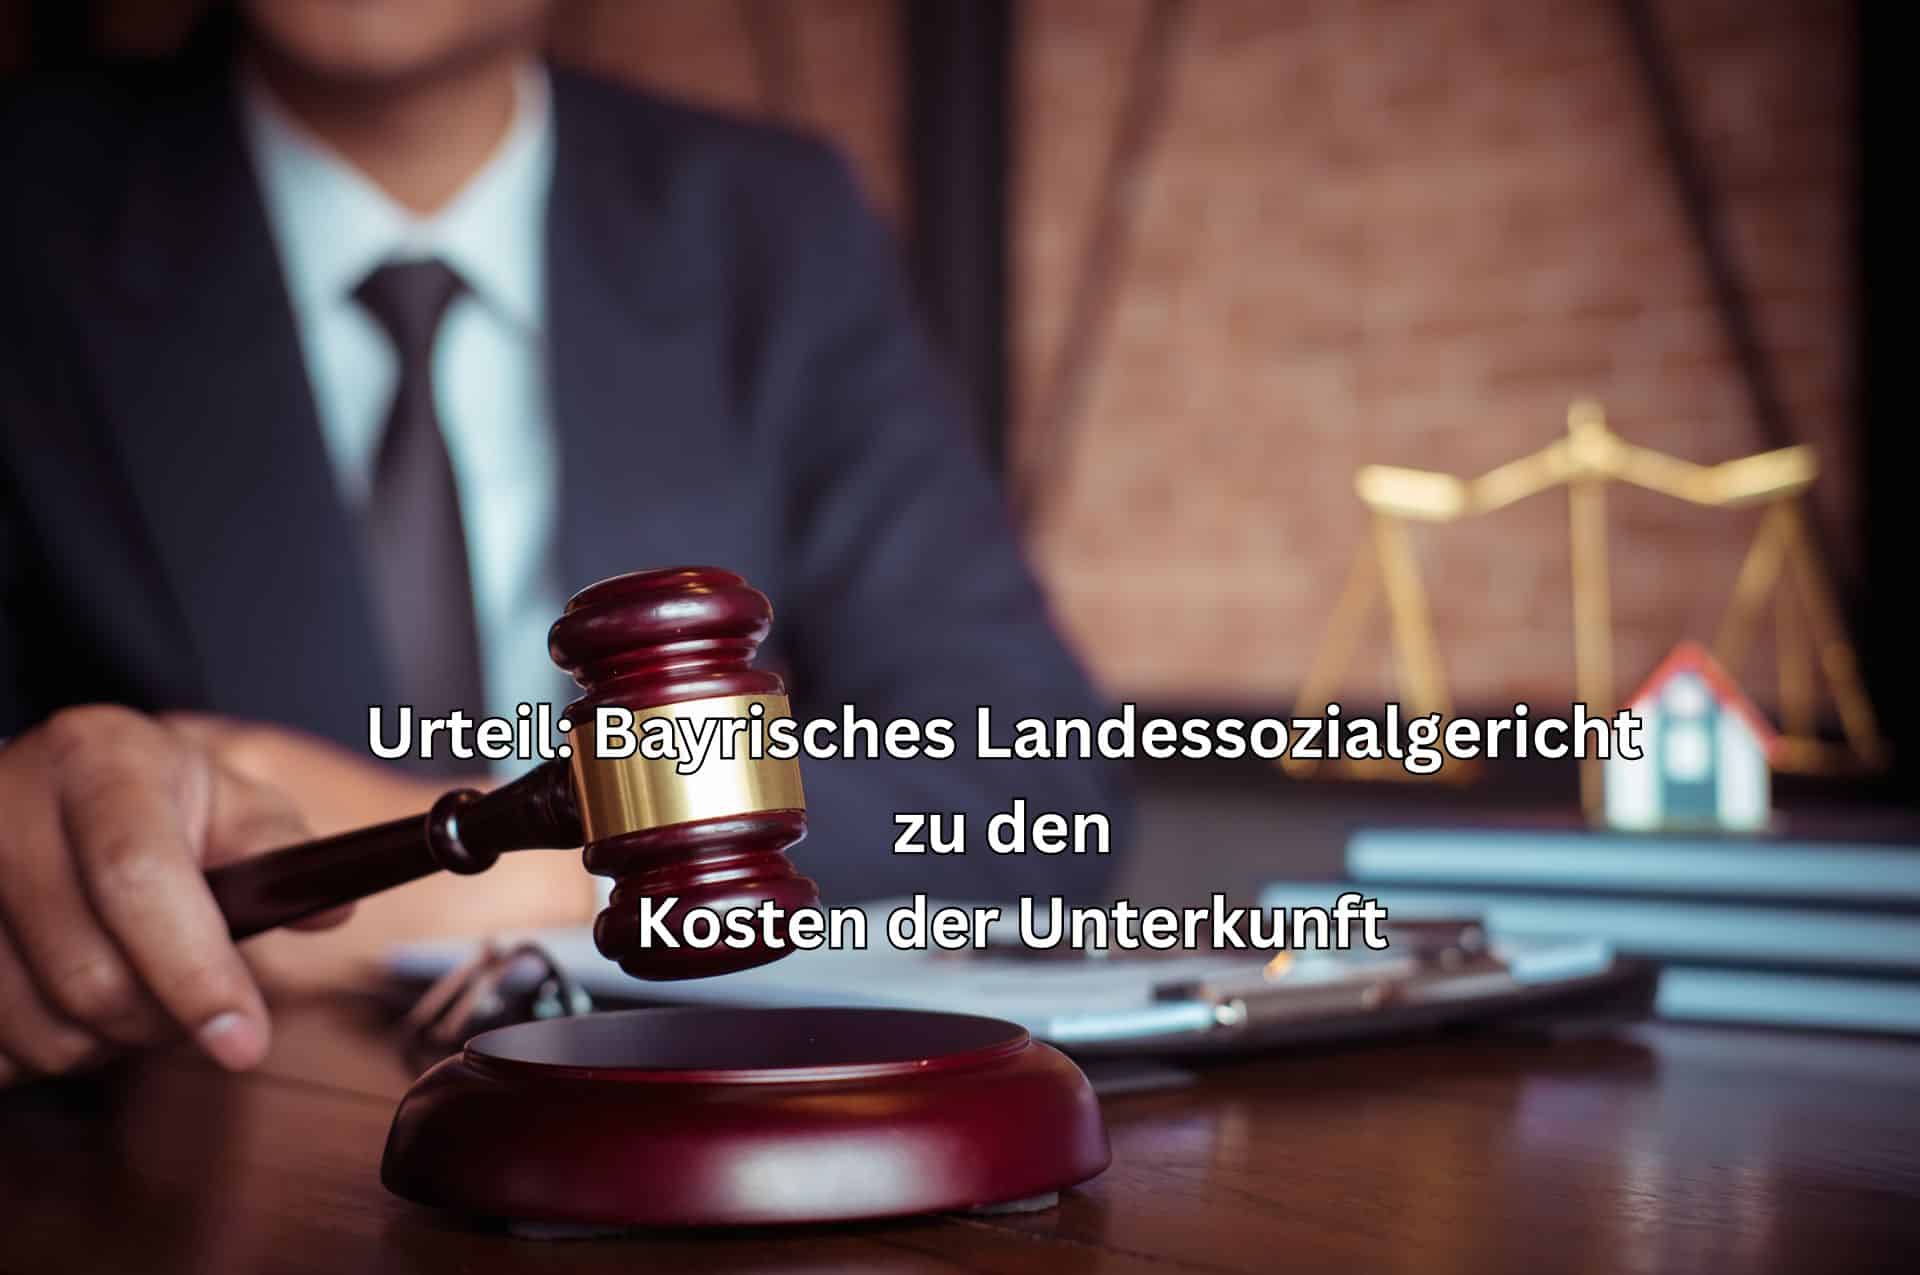 Urteil Bayrisches Landessozialgericht: besondere Anforderung an Kostensenkungsverfahren